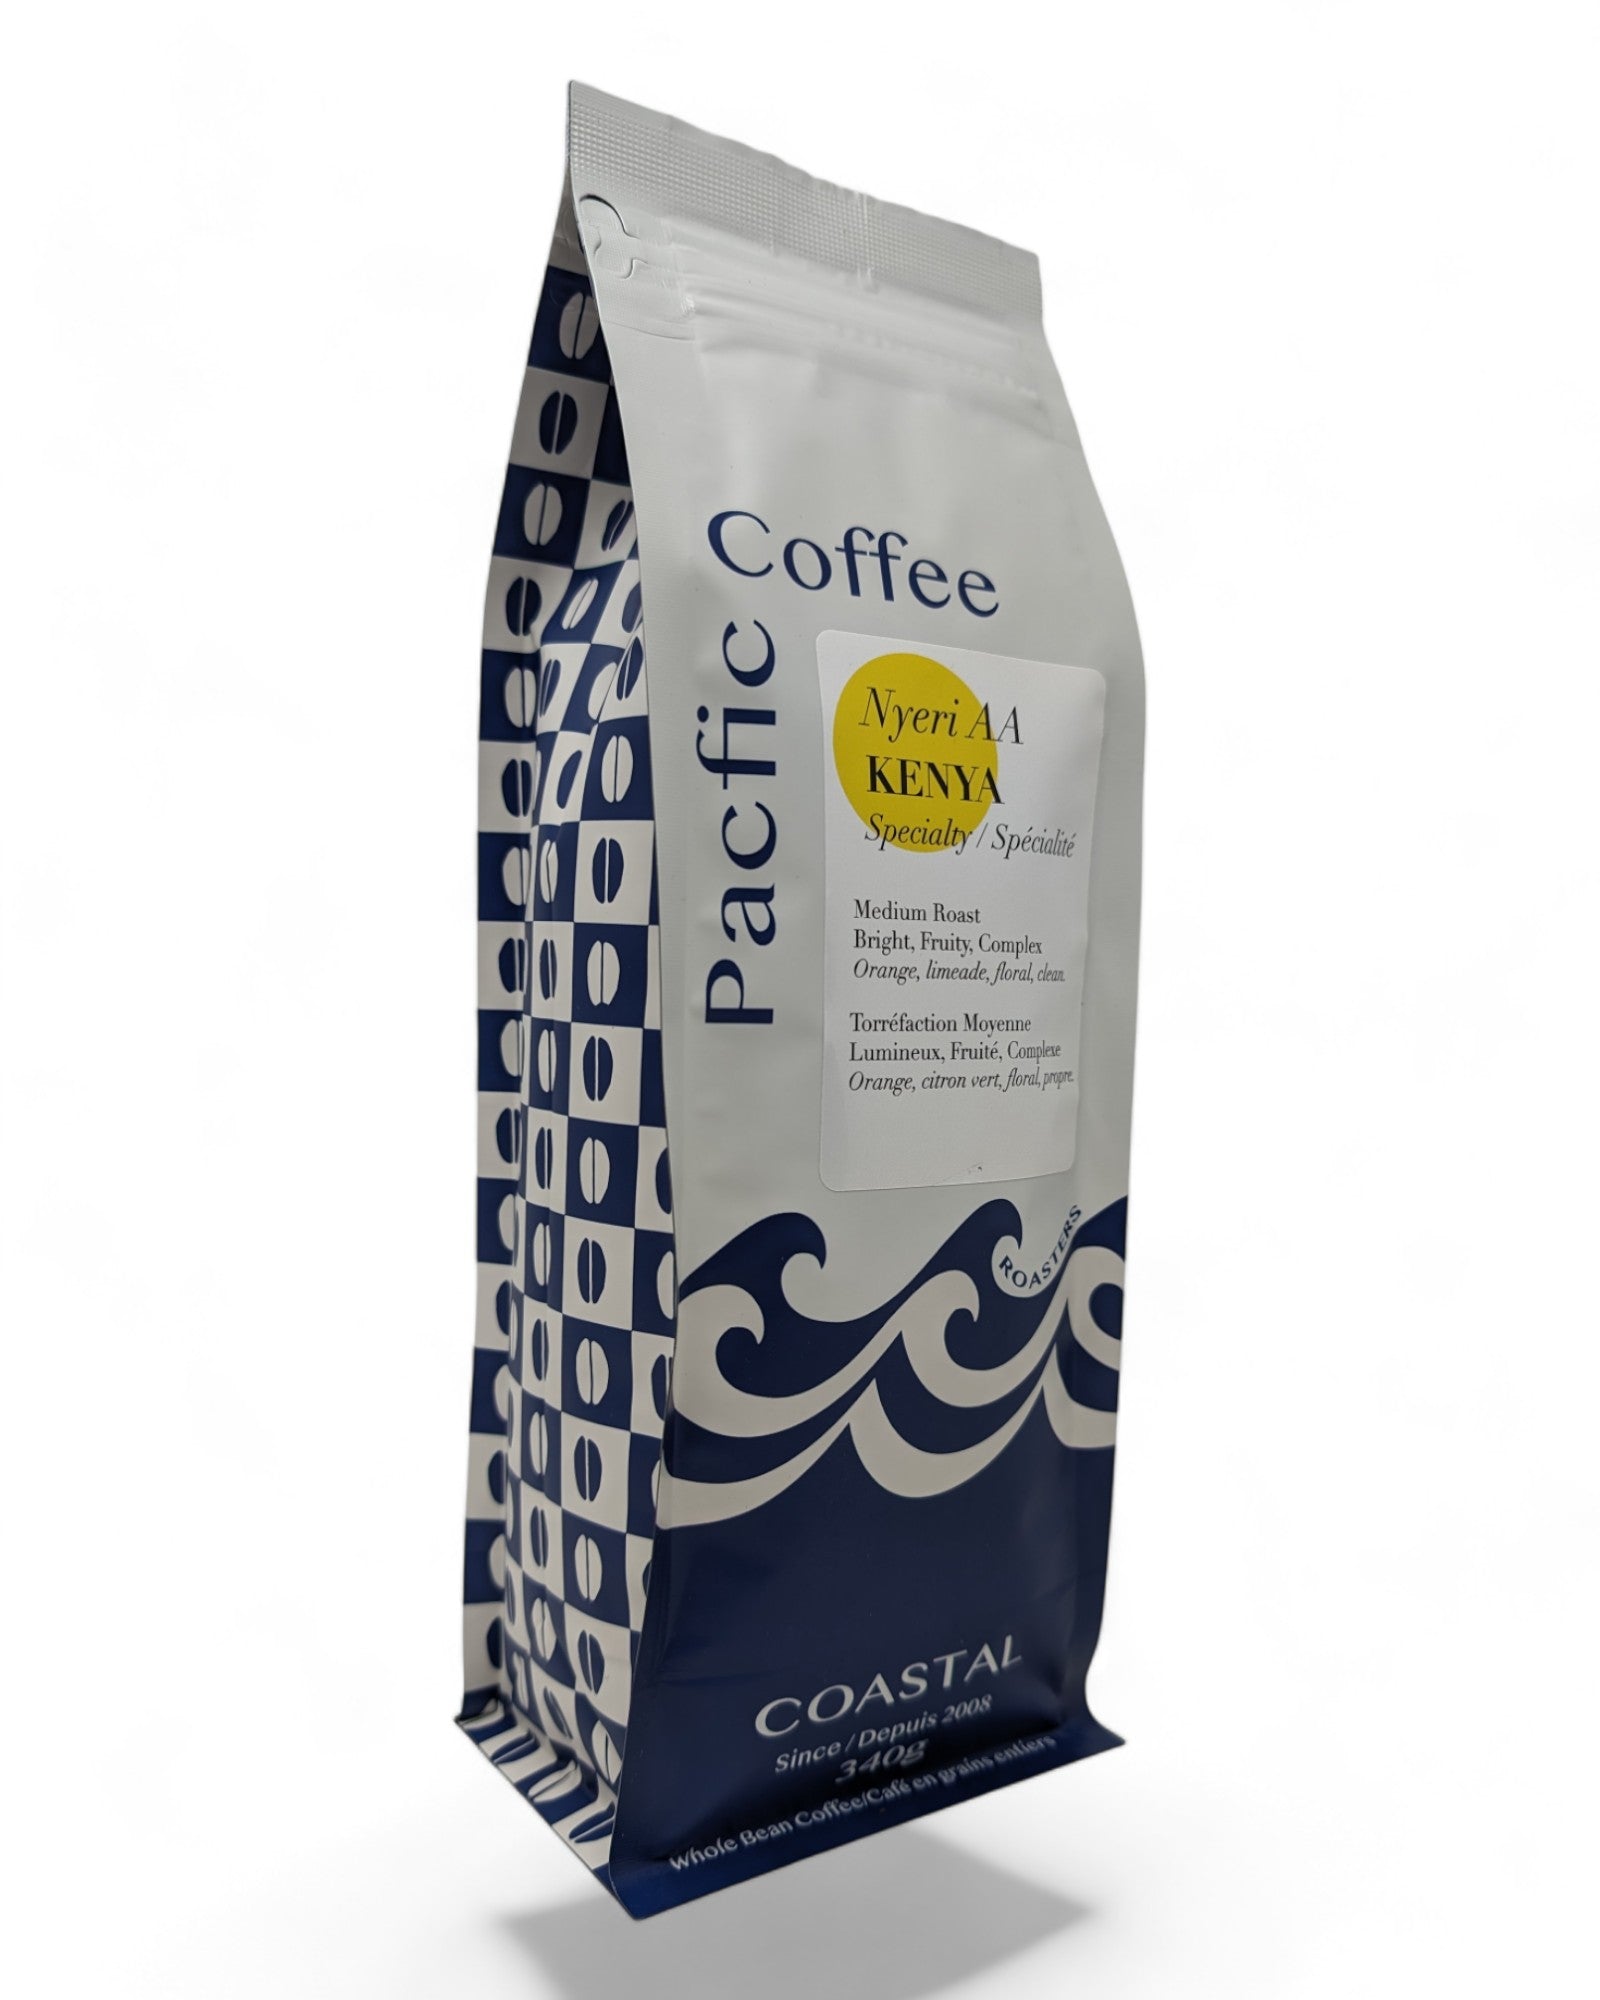 Nyeri AA Kenya Specialty Coffee